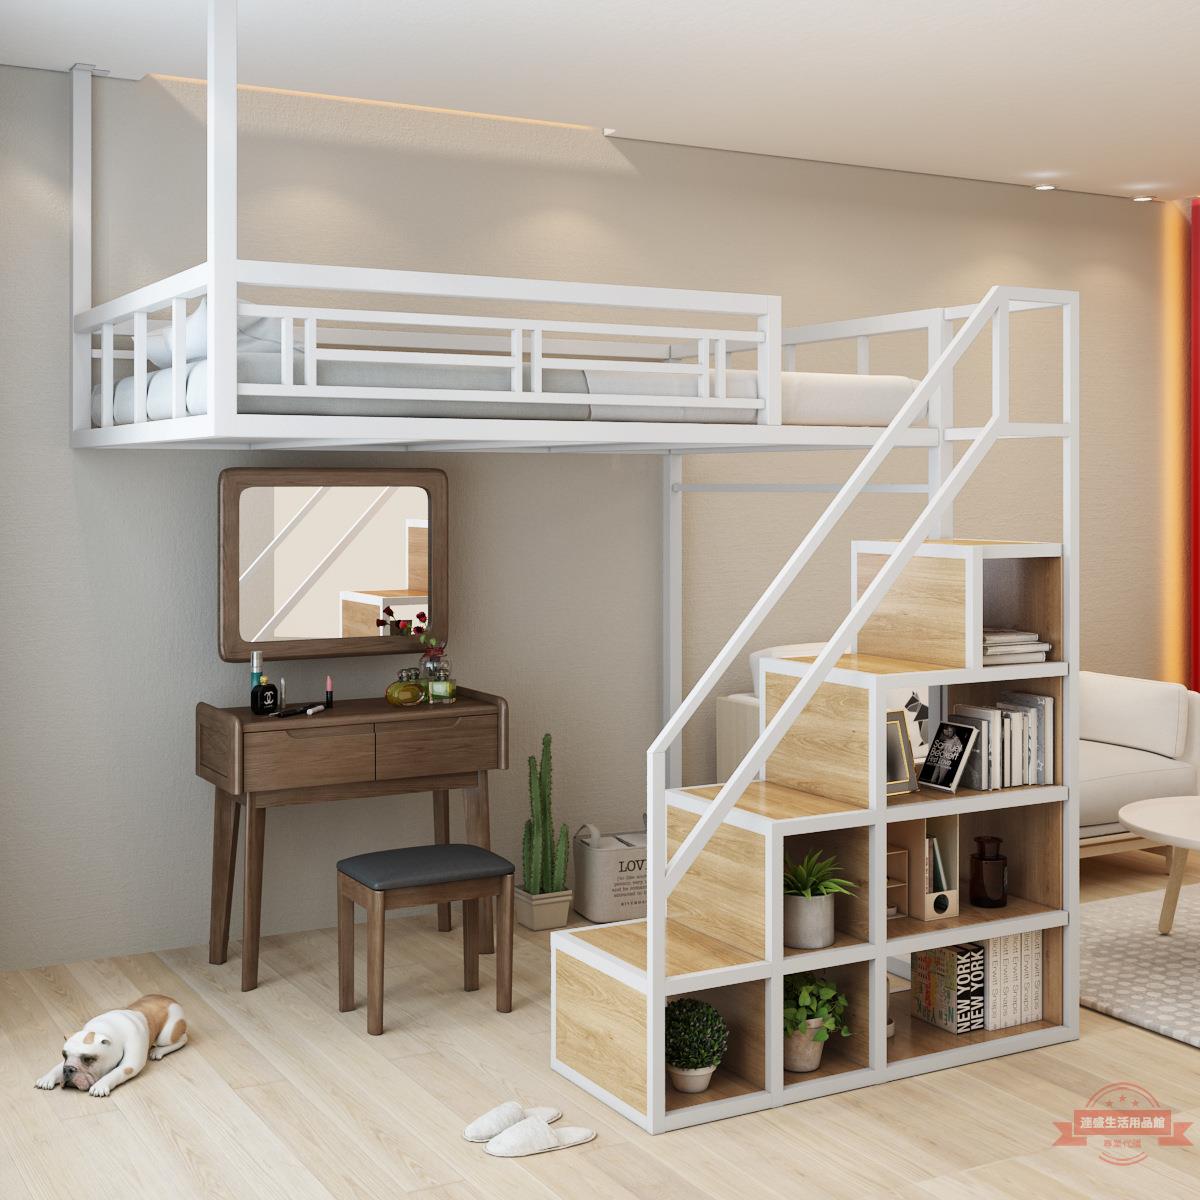 工廠新款現代單身小公寓鐵藝高架單雙人床簡約設計復式二樓空間閣